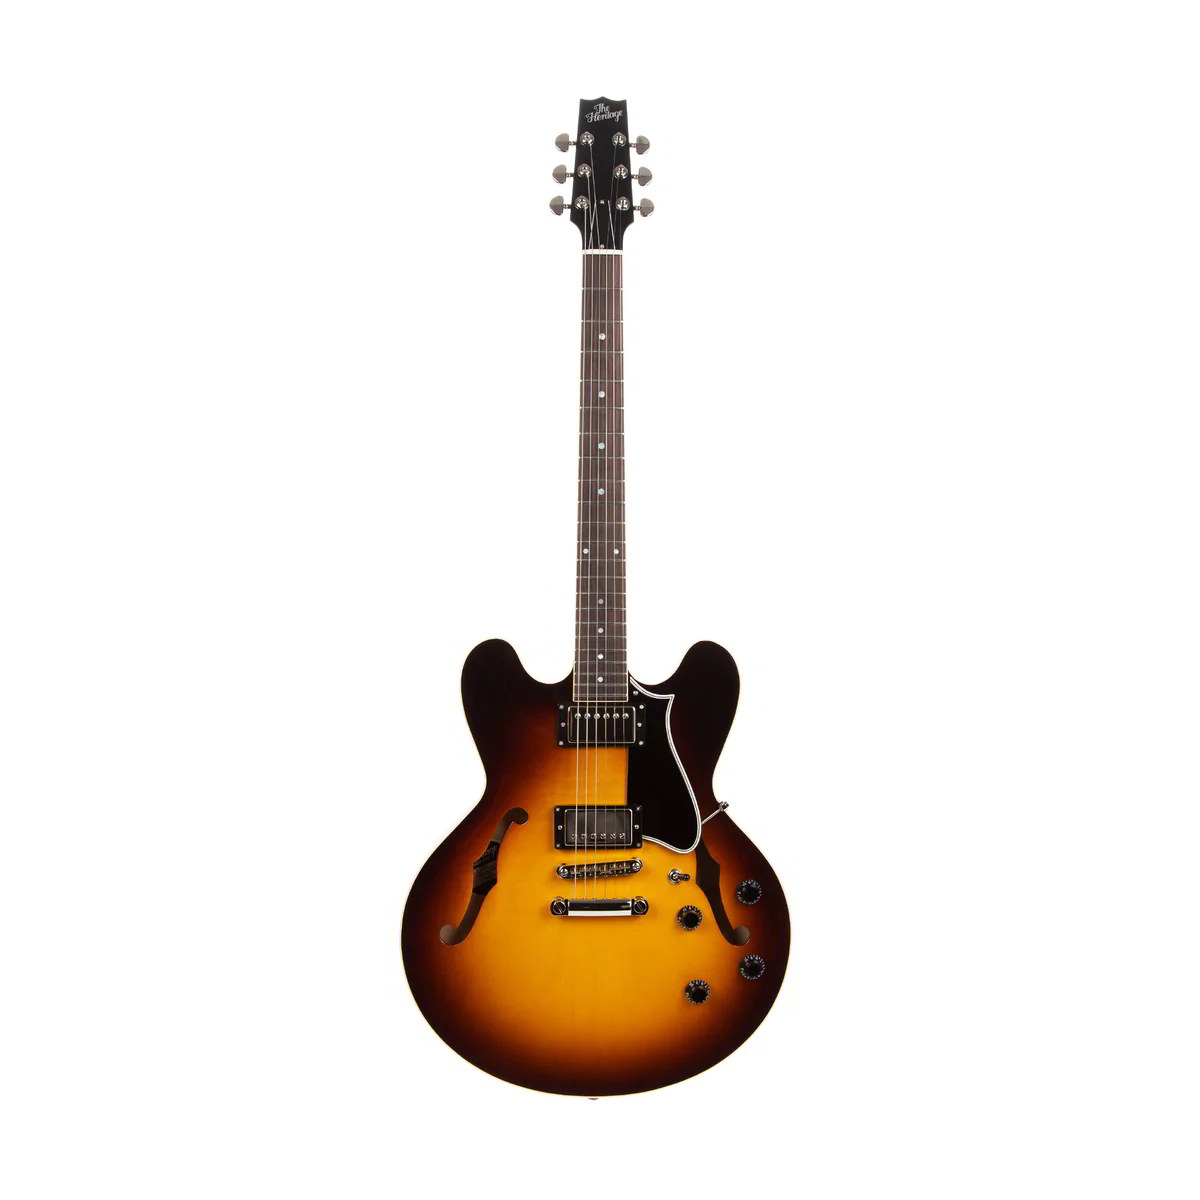 ギブソンのセミハードのギターケース、クロスなど新品の付属品多数付き 新品・未使用 - 3